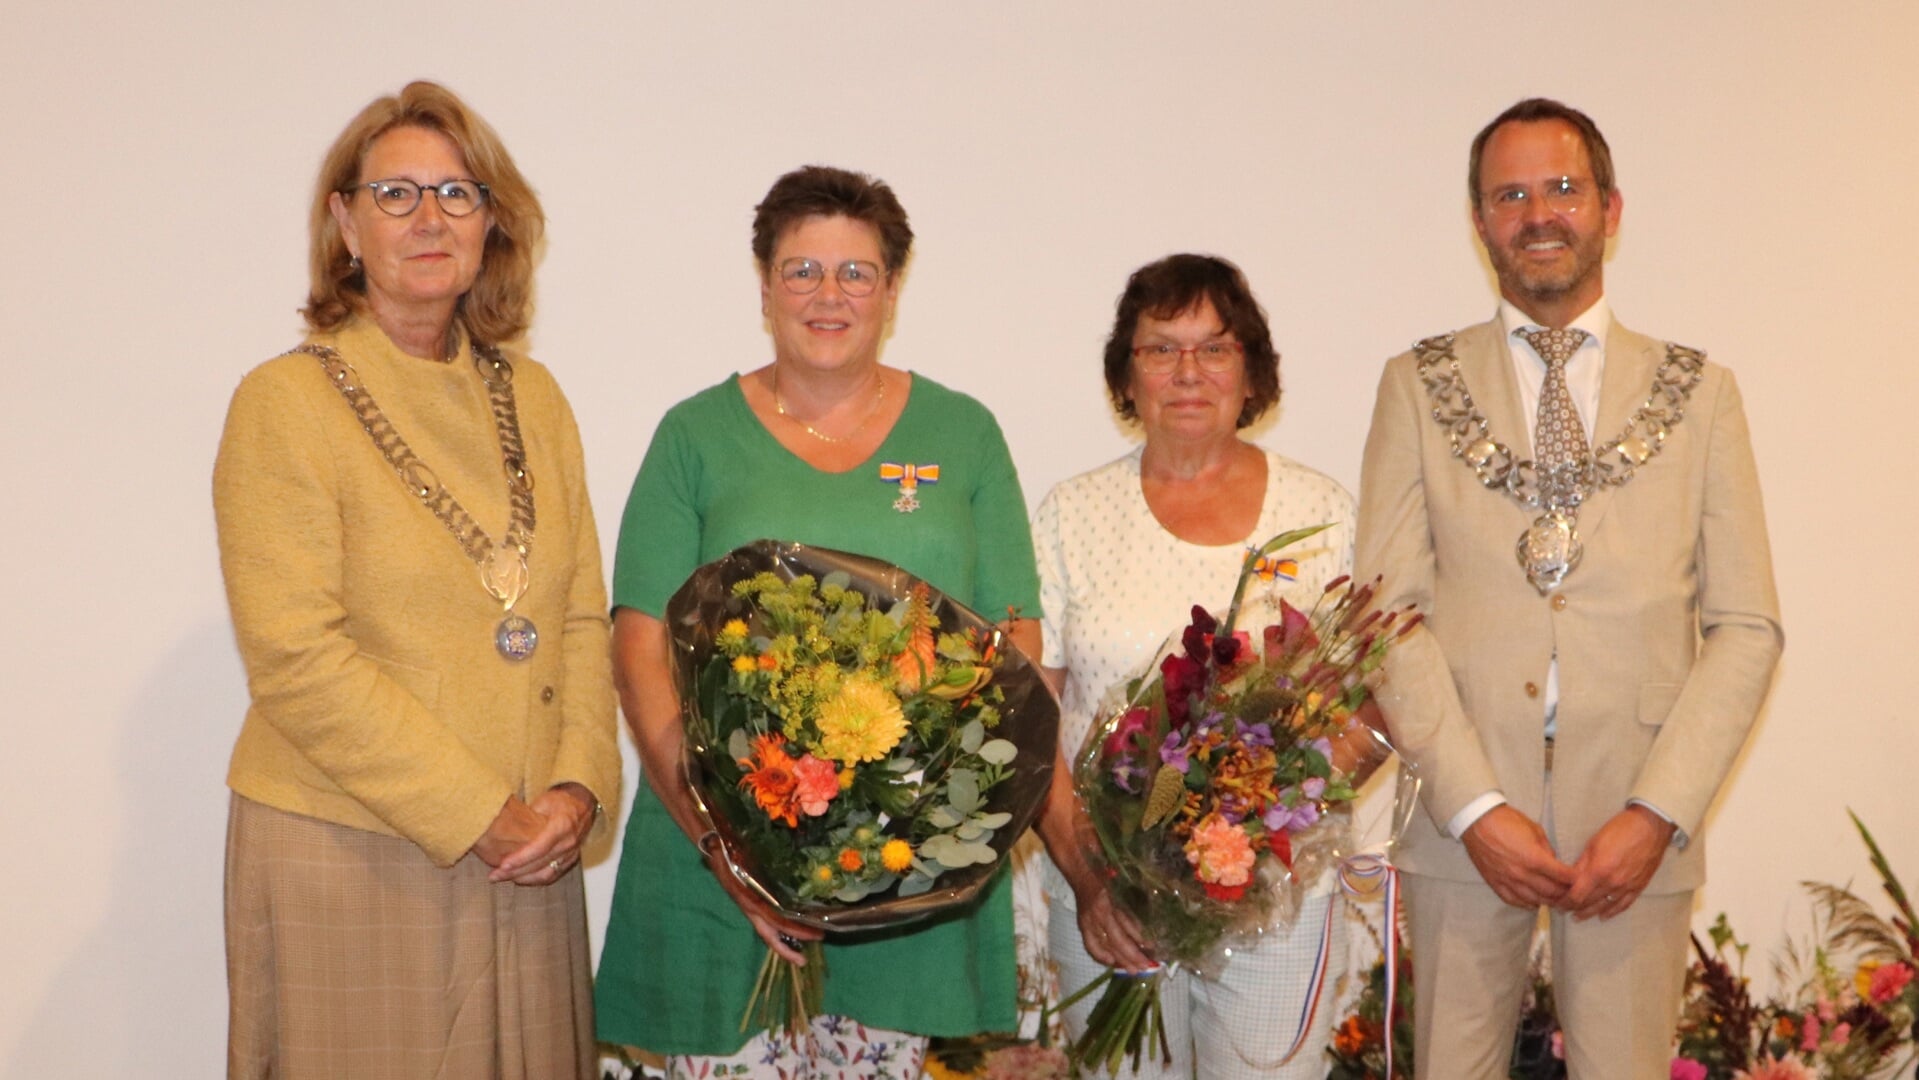 • De dames De Haaij (tweede rechts) en Bultman met de beide burgemeesters.